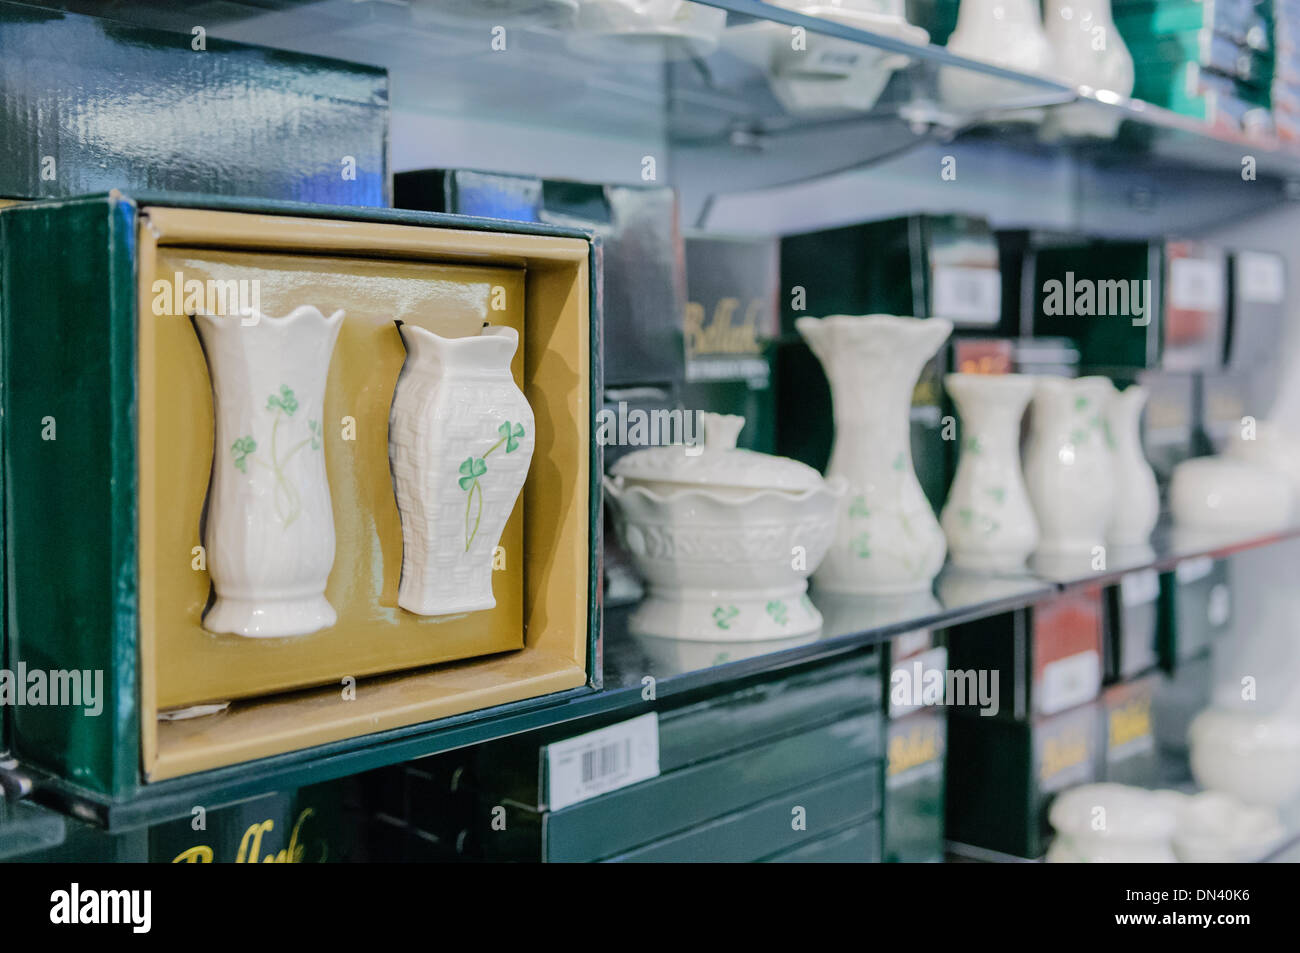 Los estantes con Belleek Pottery irlandesa a la venta en una tienda Foto de stock